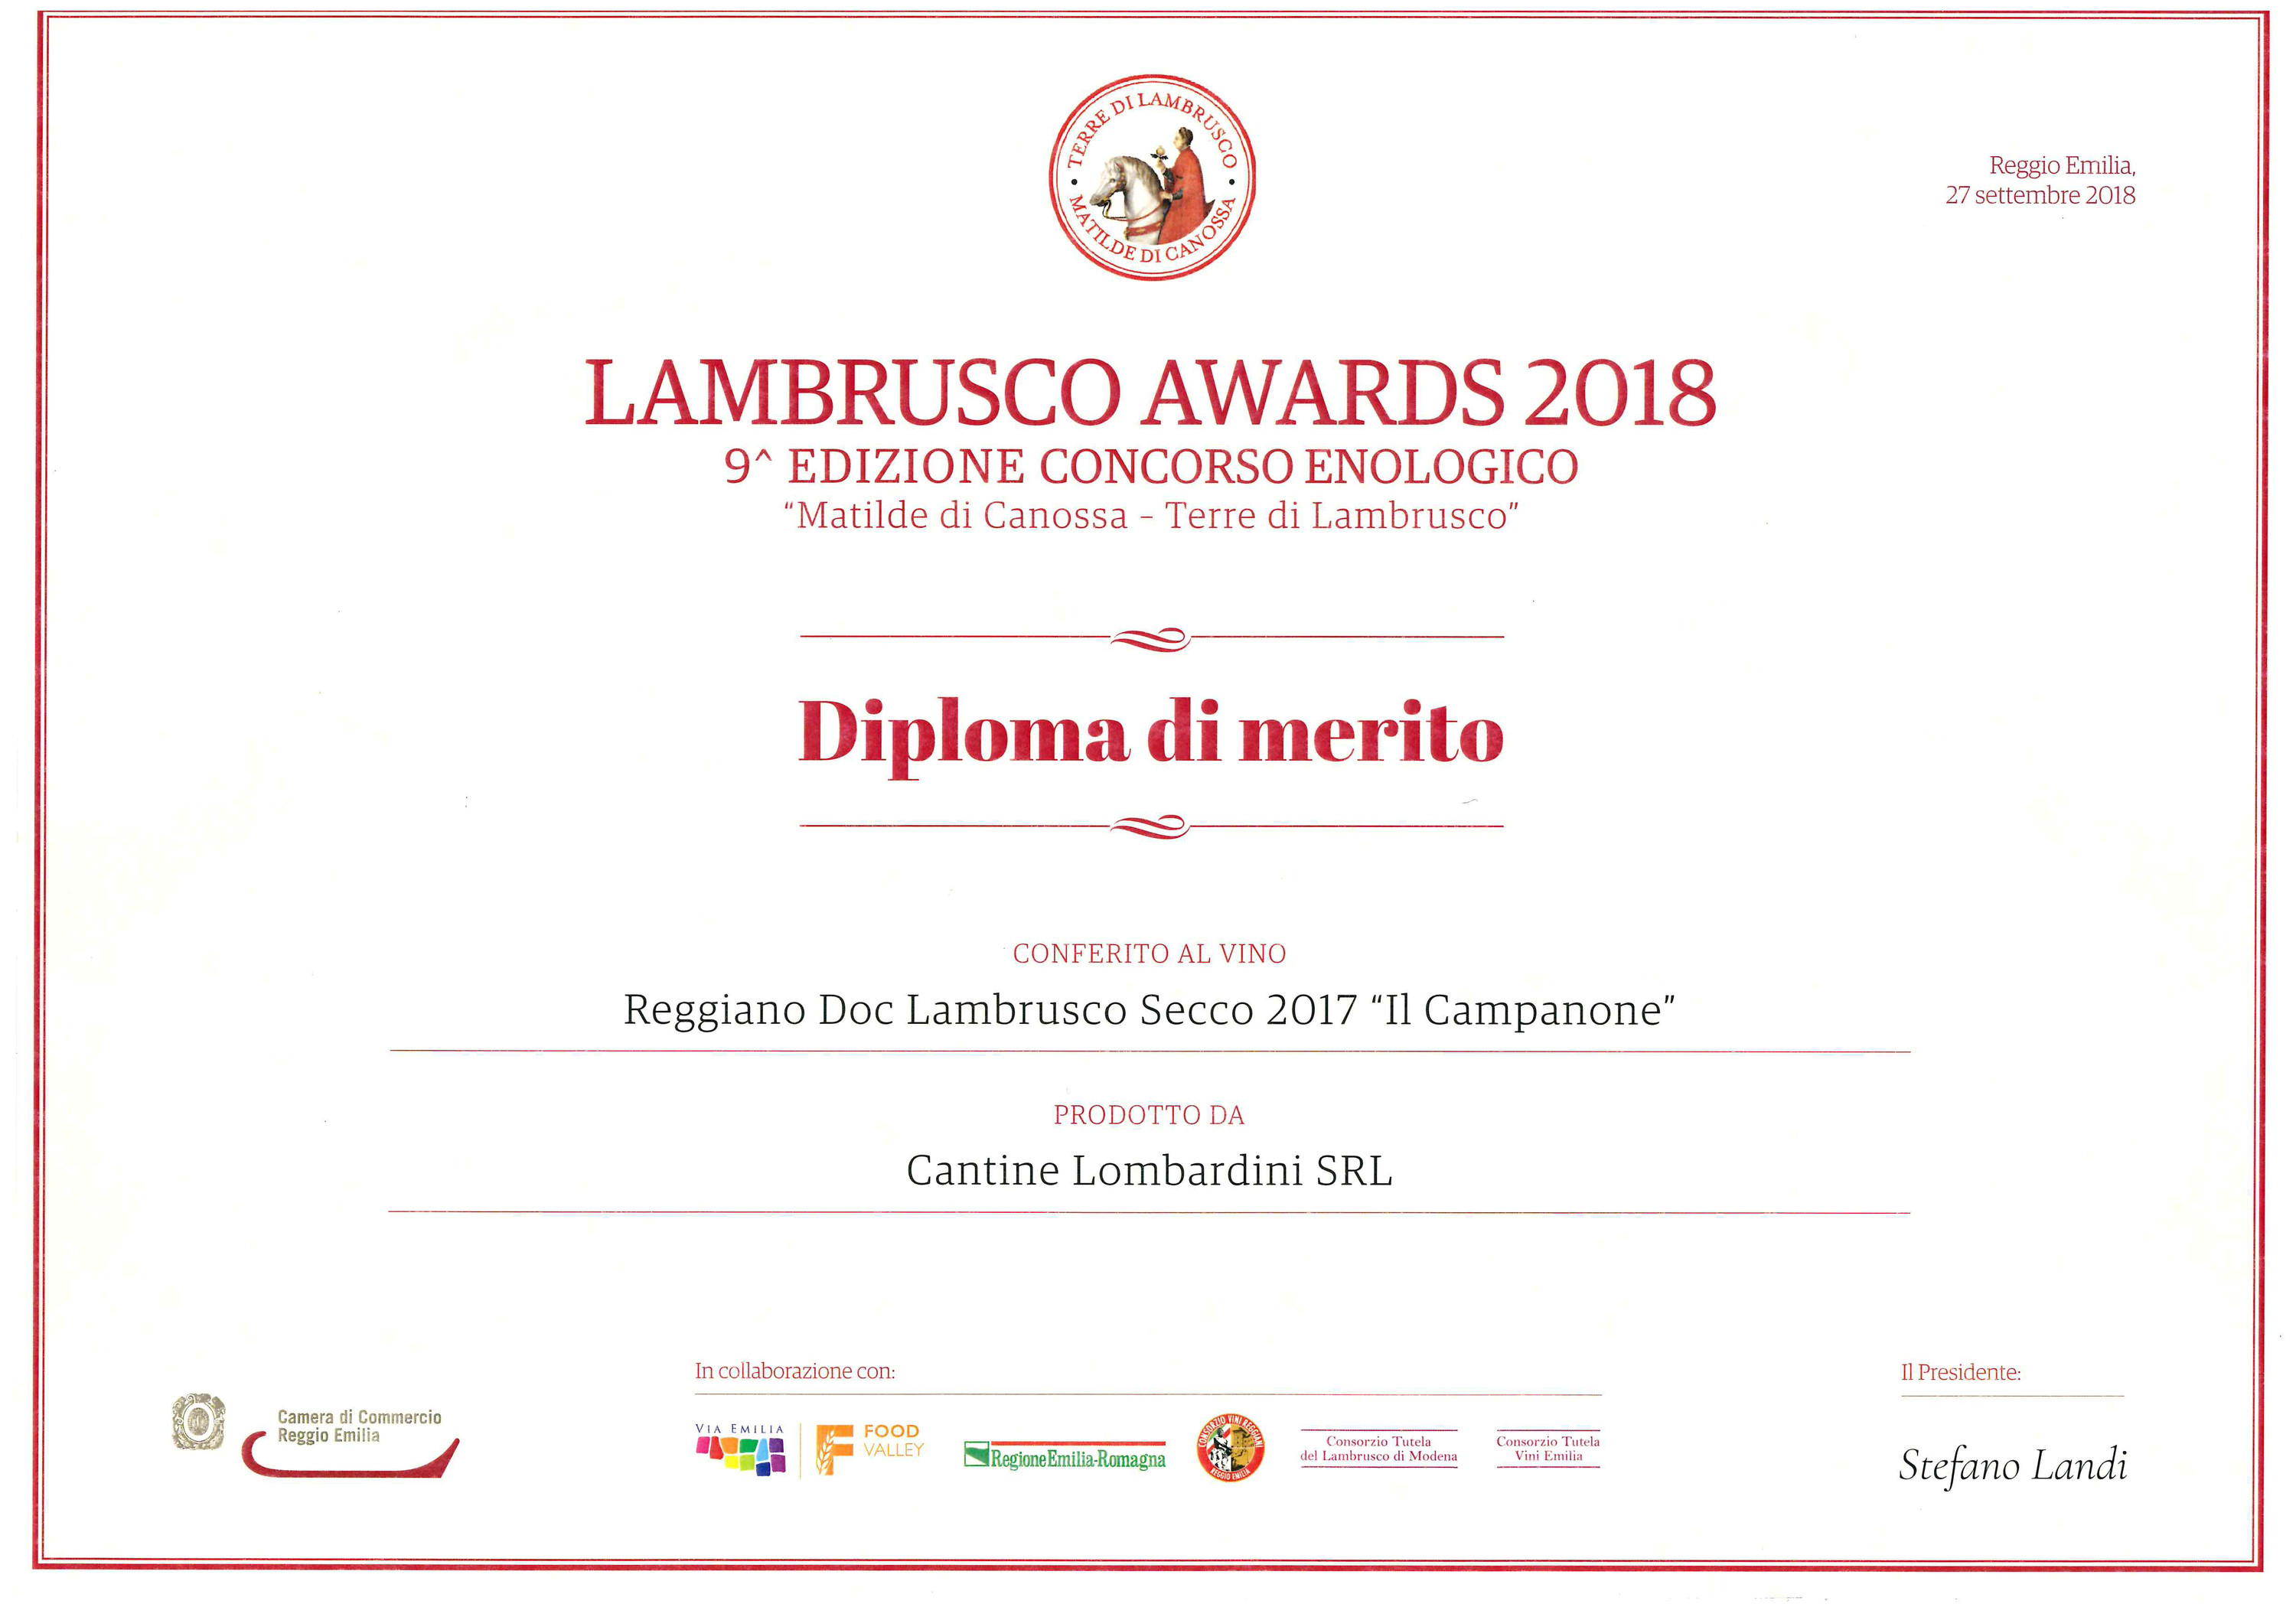 Lambrusco awards 2018_3.jpg